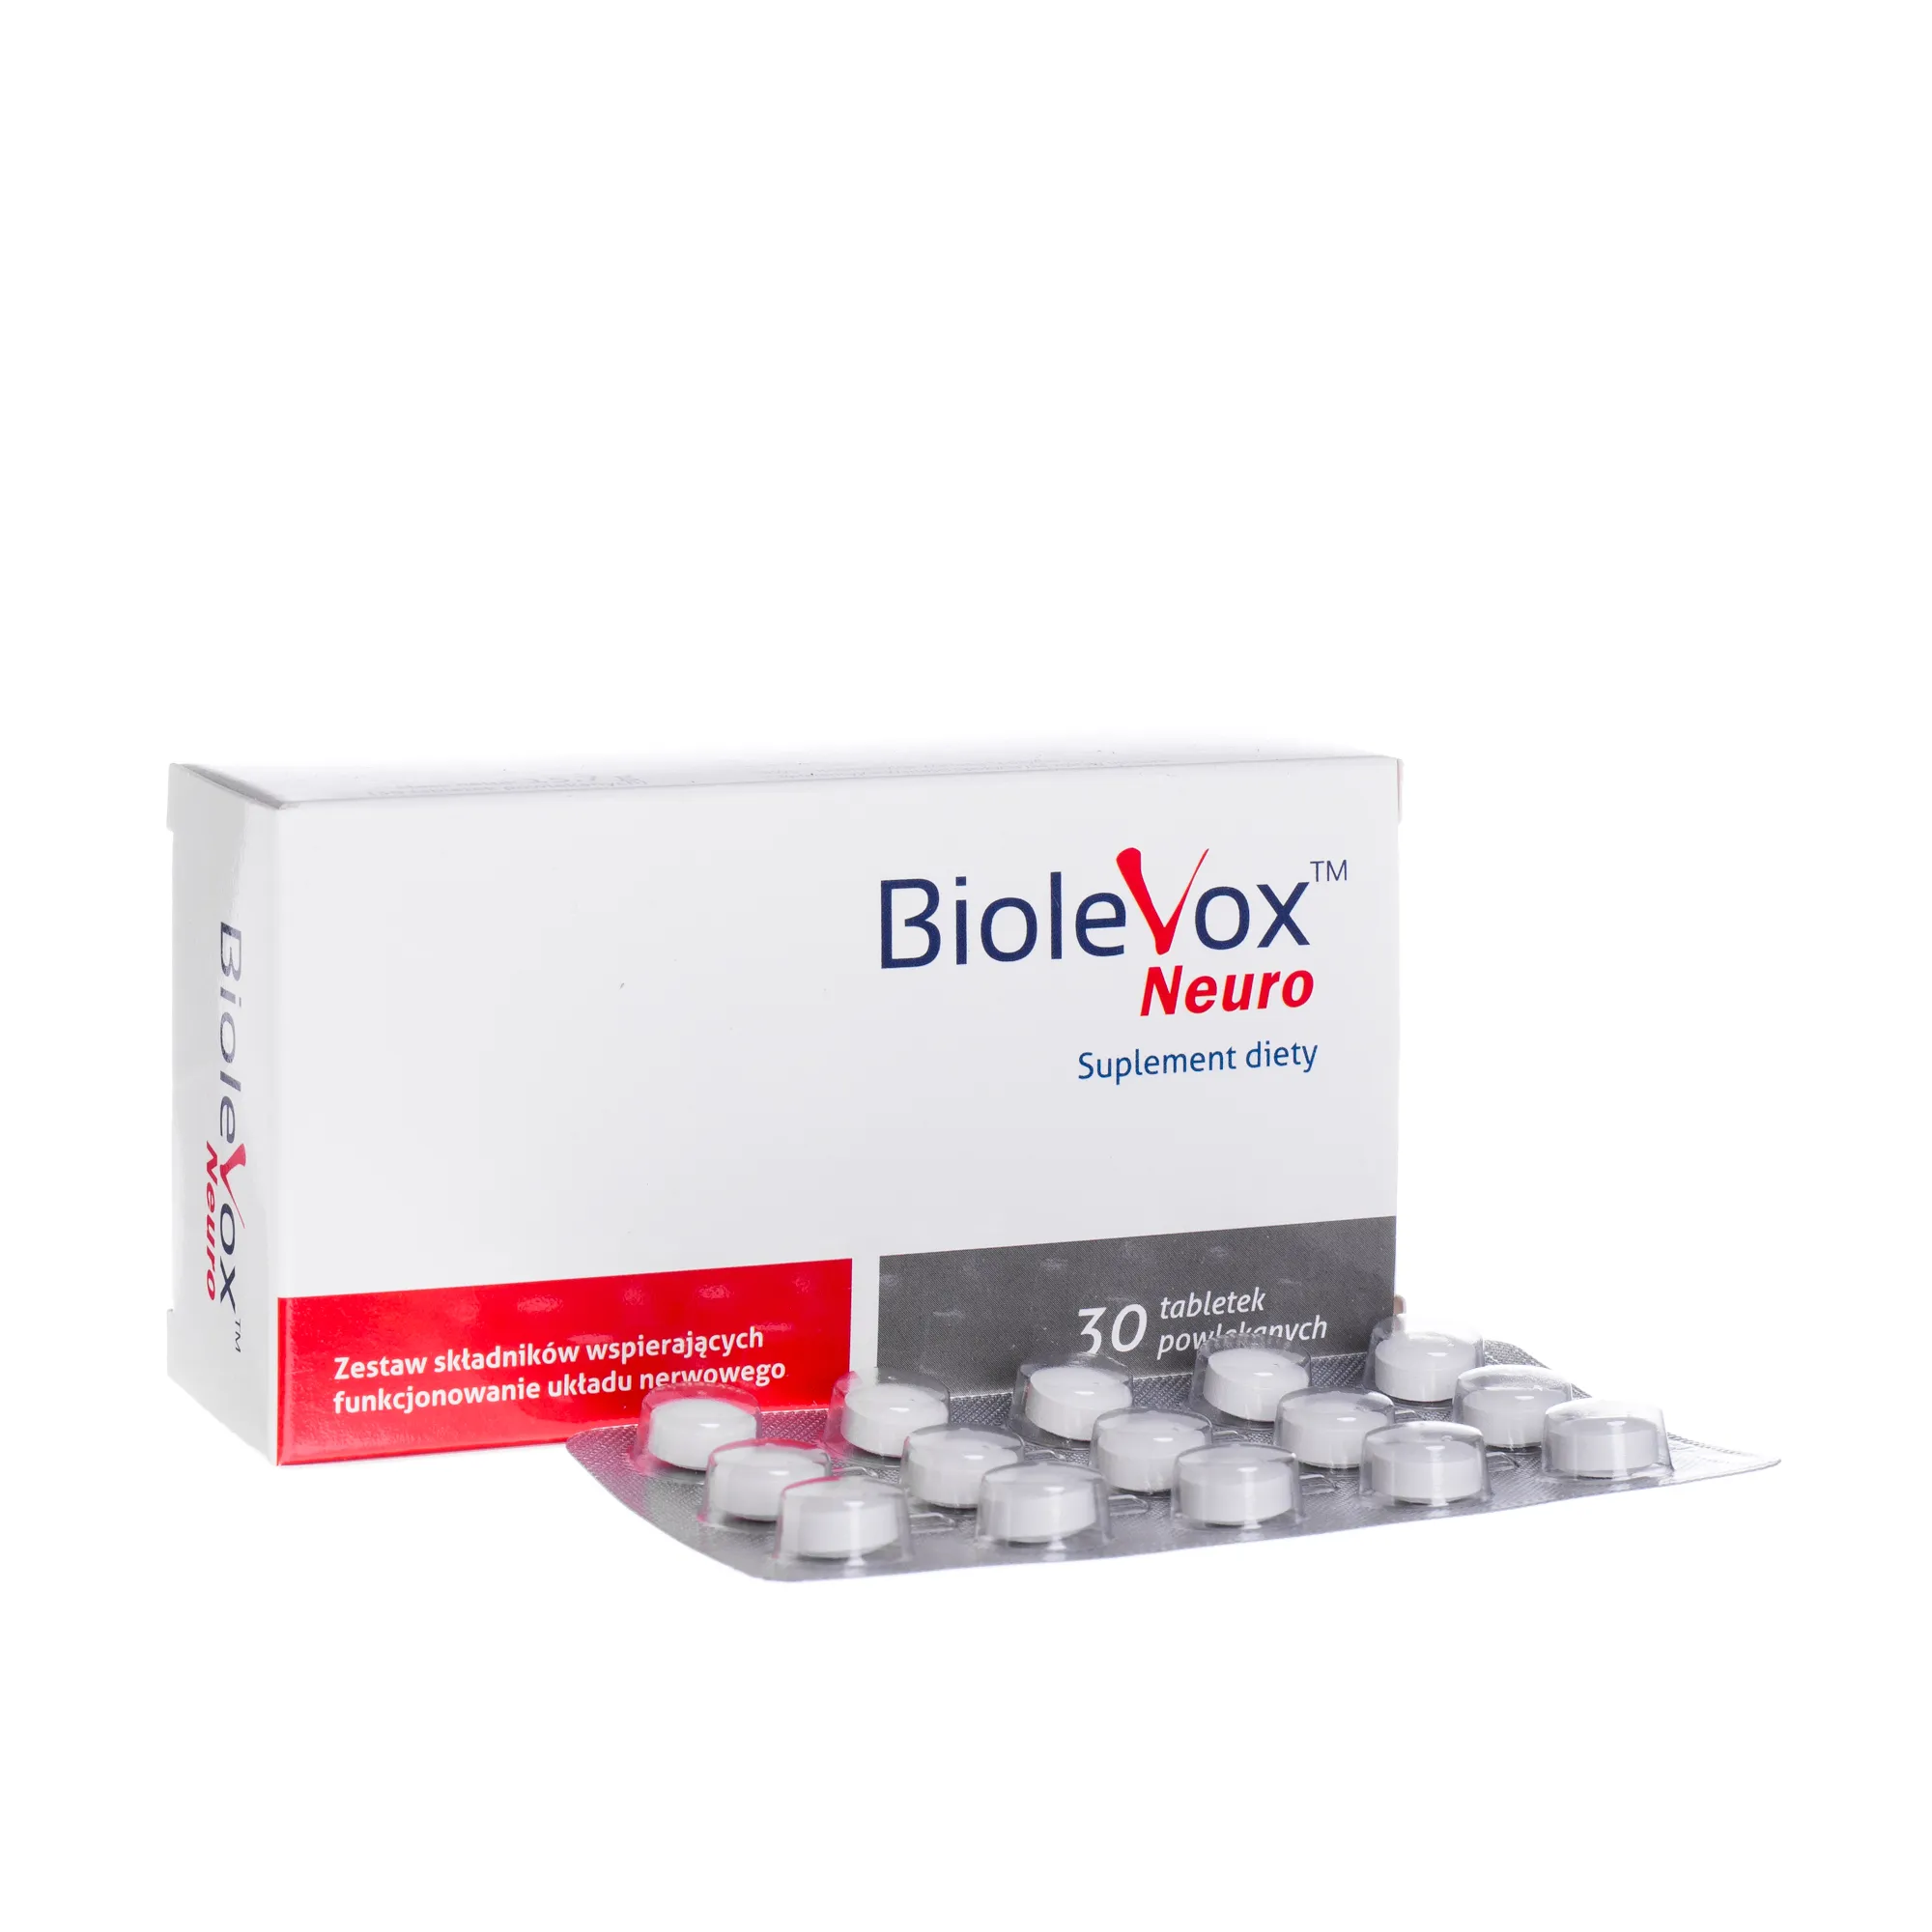 BioleVox Neuro, suplement diety, 30 tabletek 